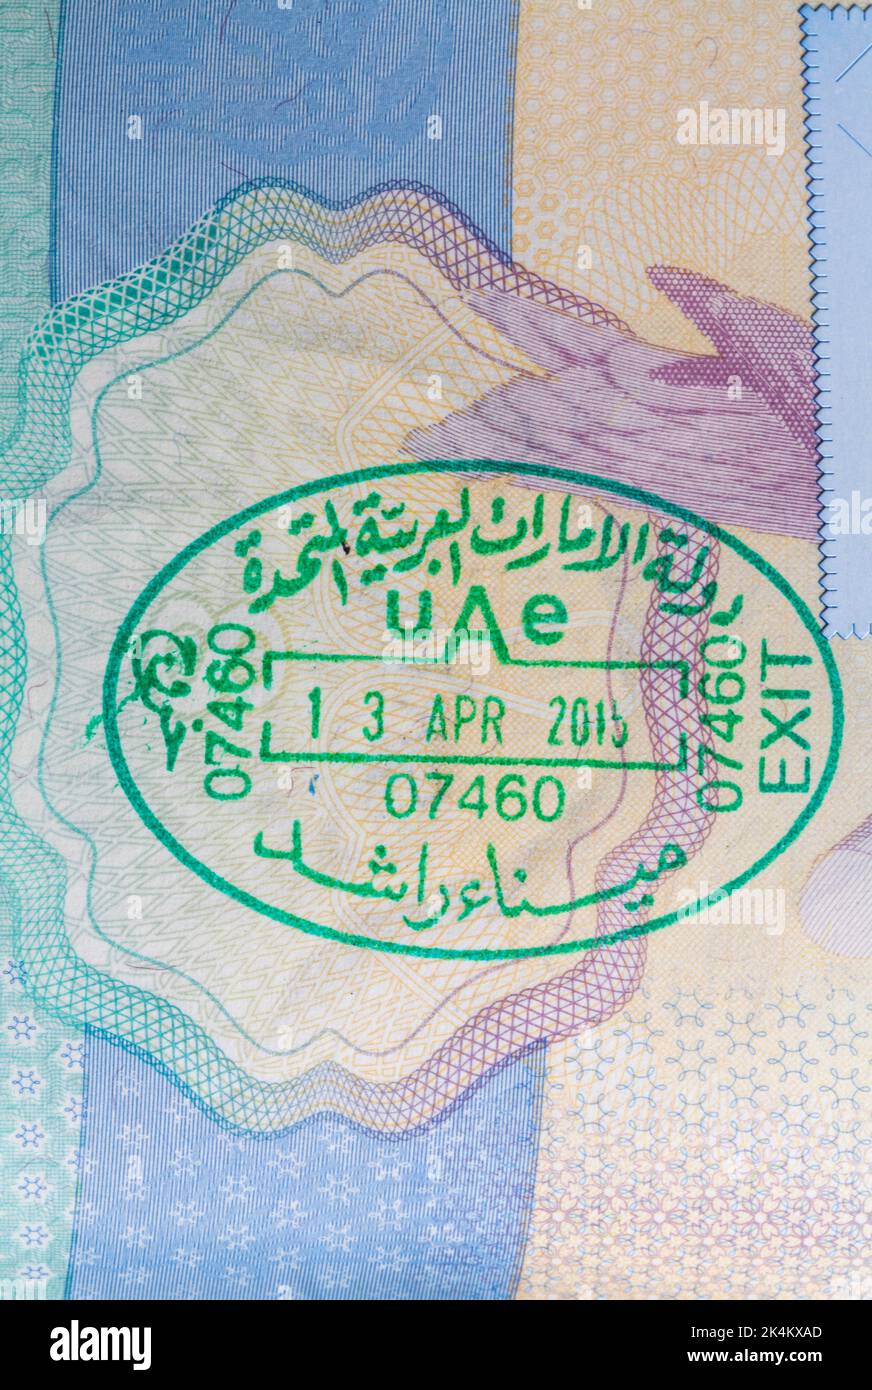 Francobollo degli Emirati Arabi Uniti nel passaporto britannico - Emirati Arabi Uniti 13 aprile 2015 uscita Foto Stock